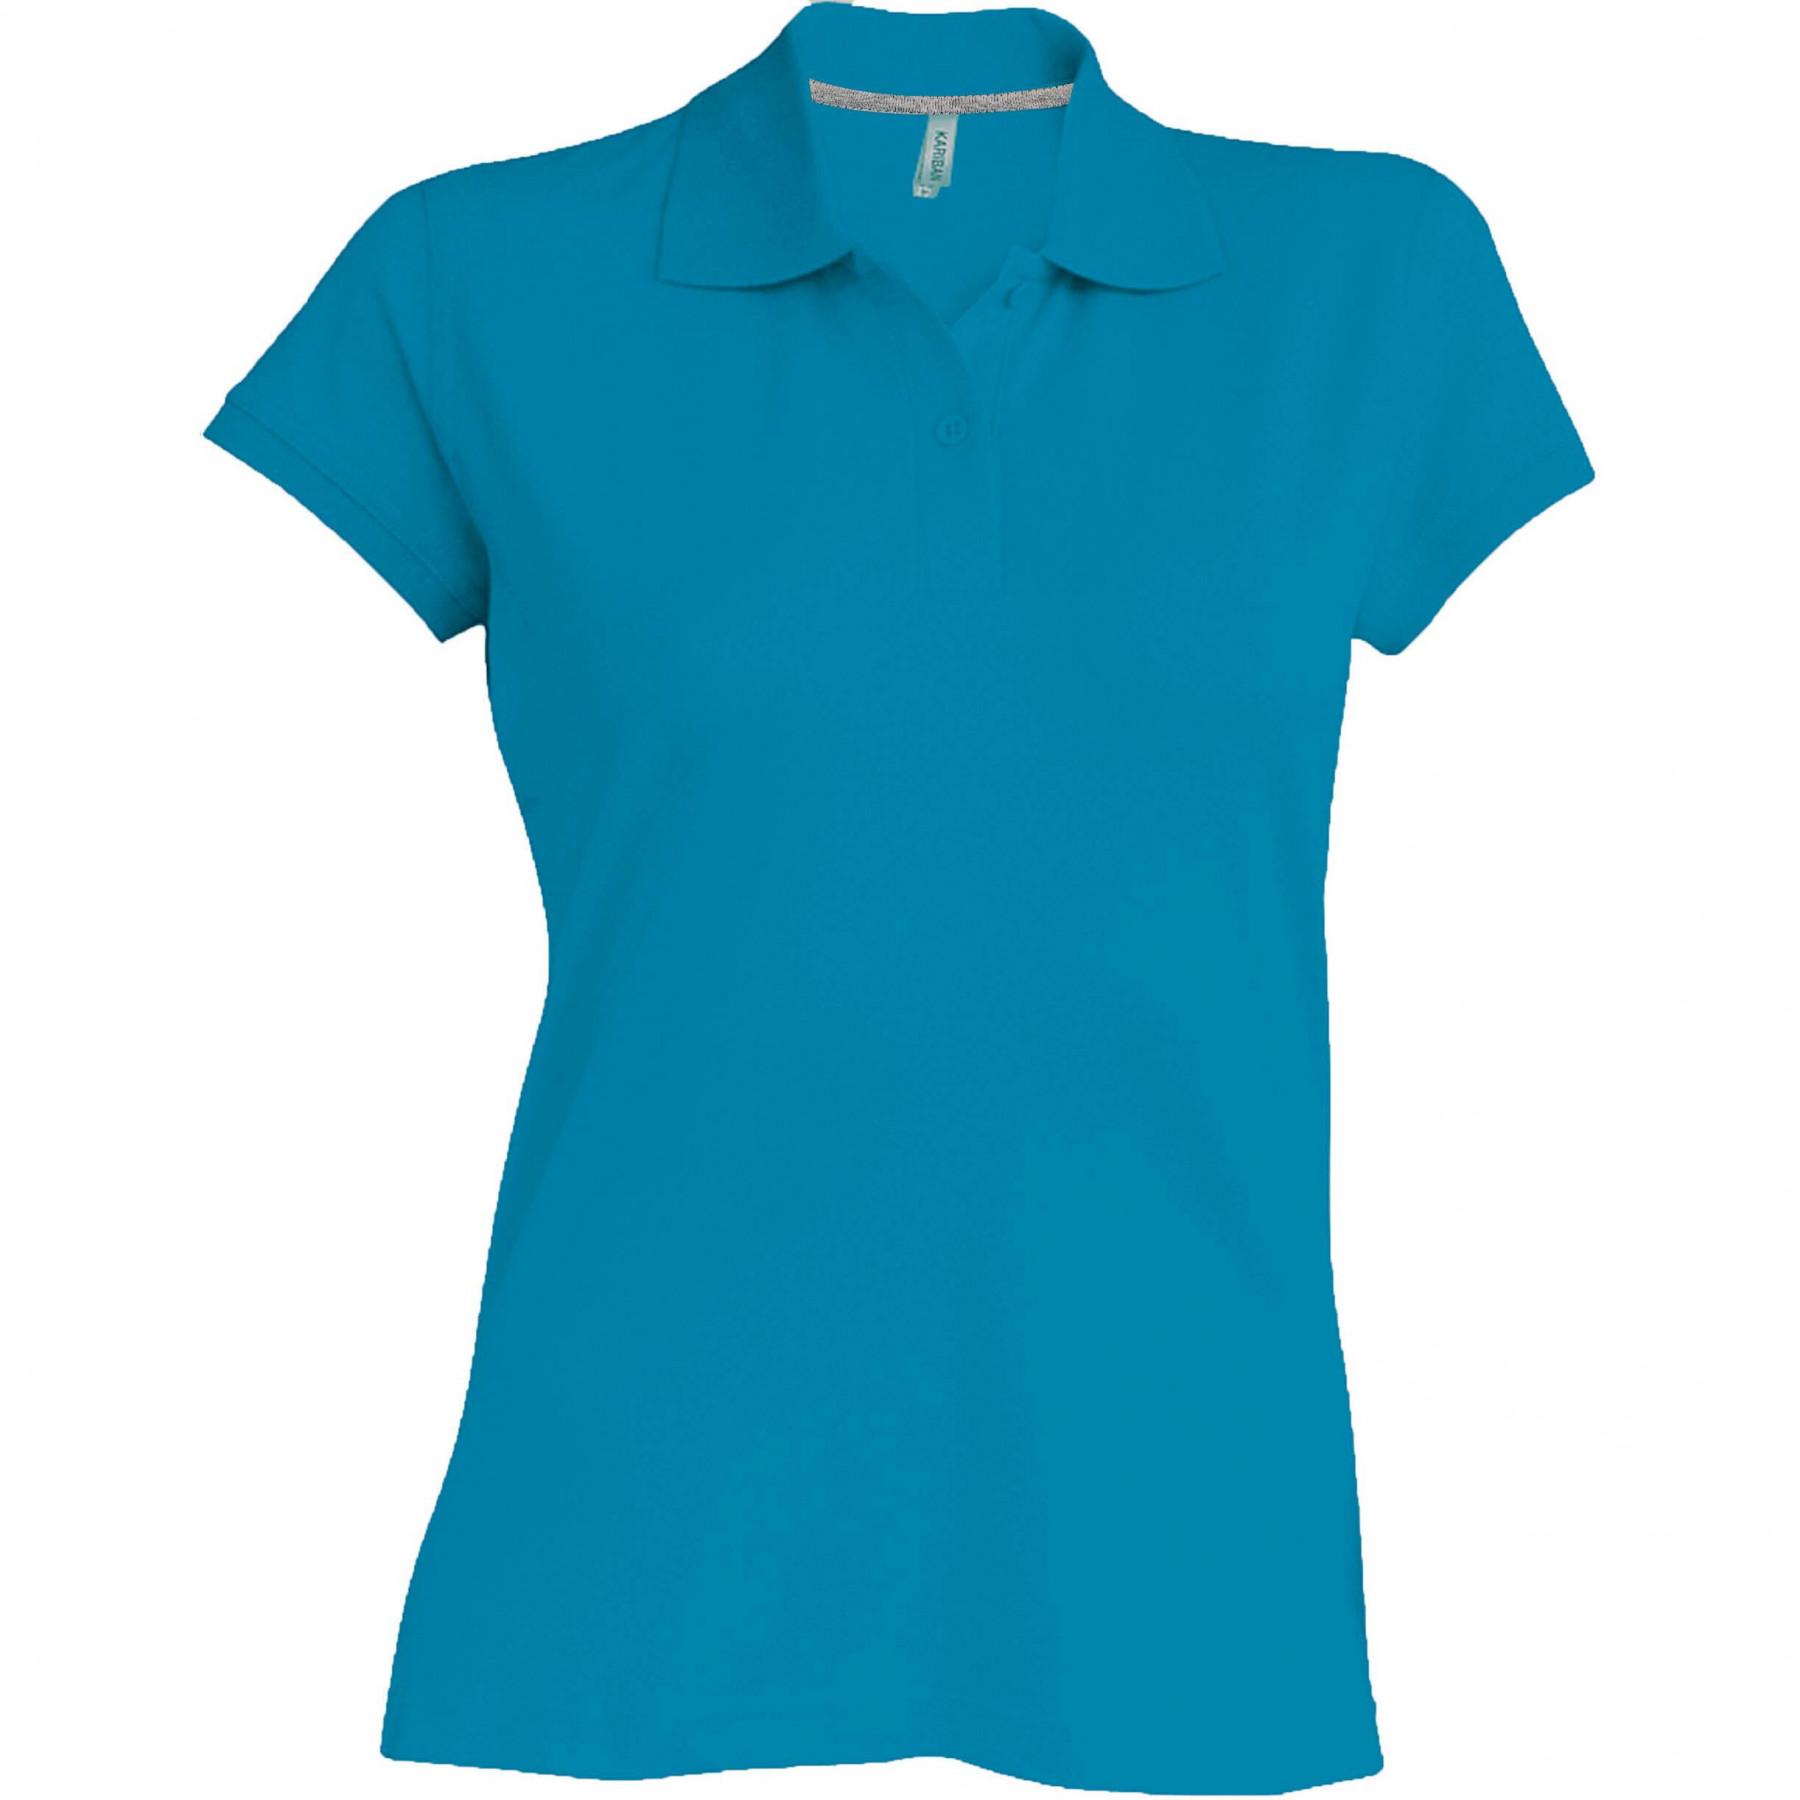 Woman polo shirt short sleeves Kariban